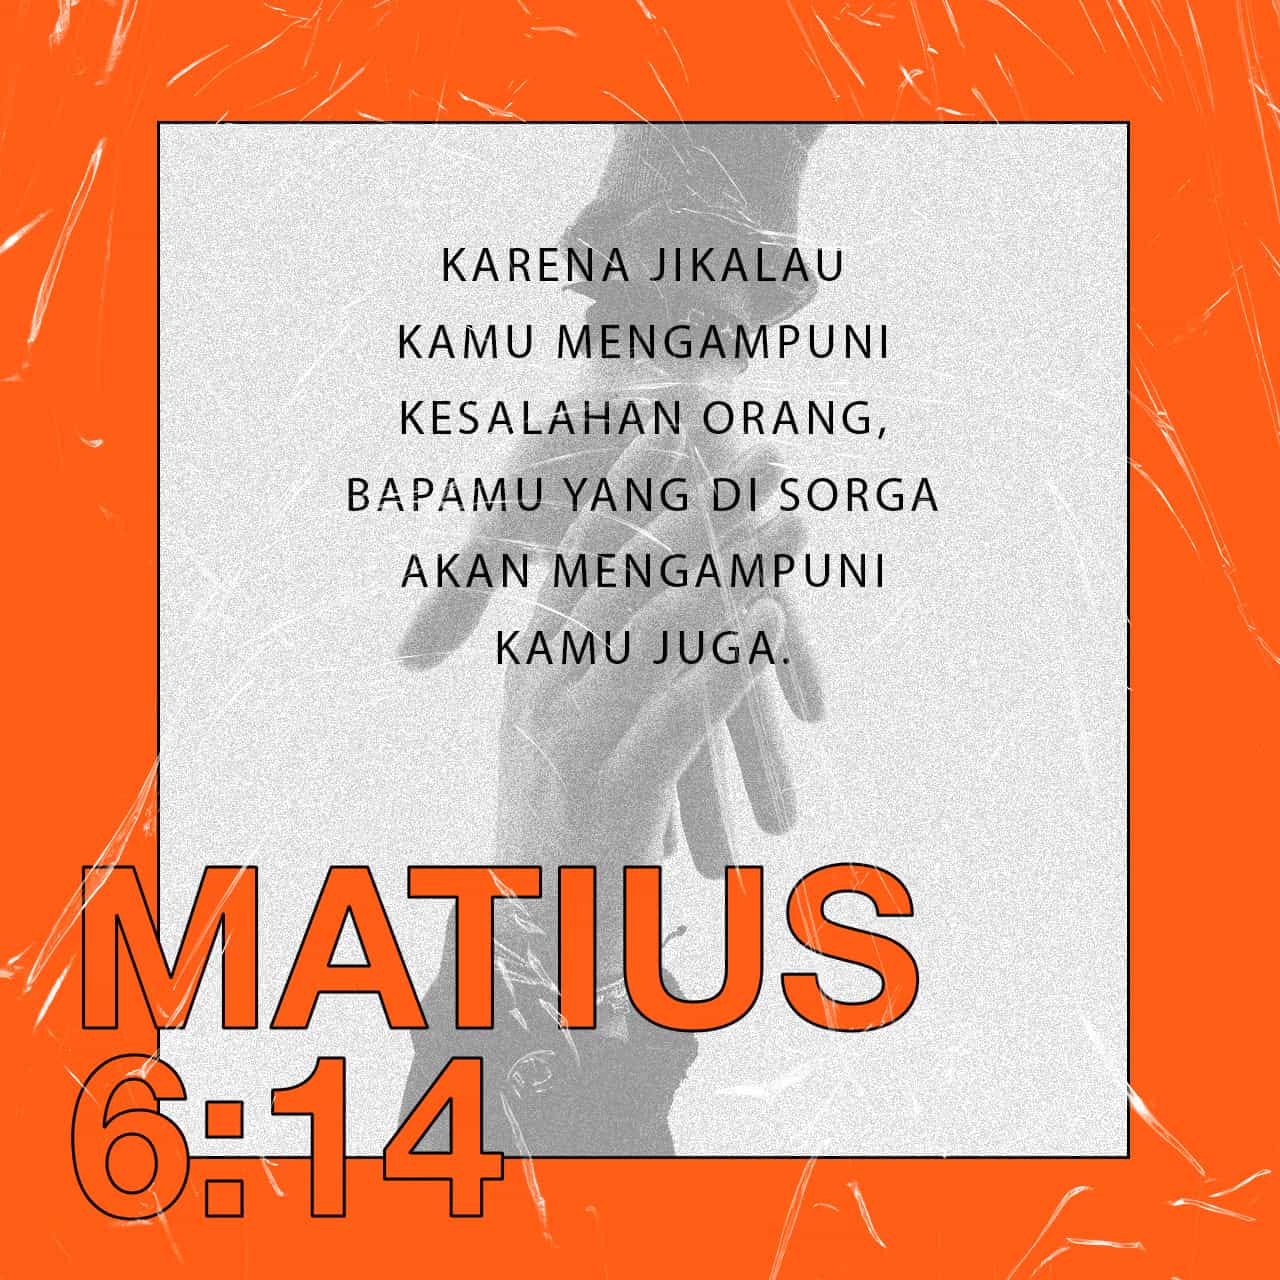 Matius 19 ayat 6